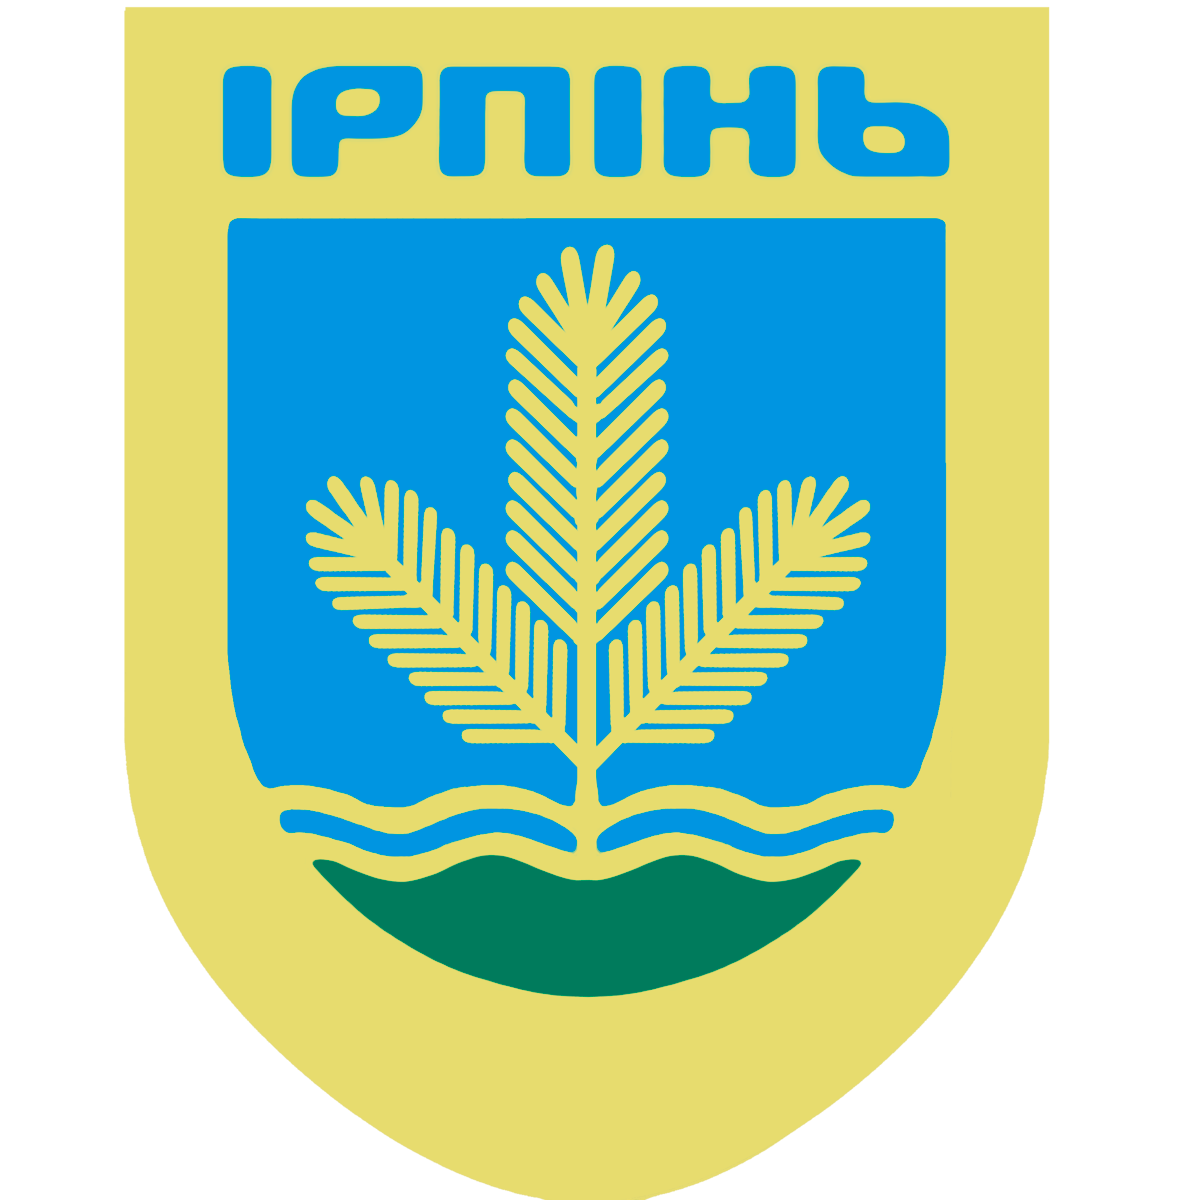 Підписано меморандум між містом ірпінь (київська область), асоціацією переробки відходів україни та литовською асоціацією знесення.